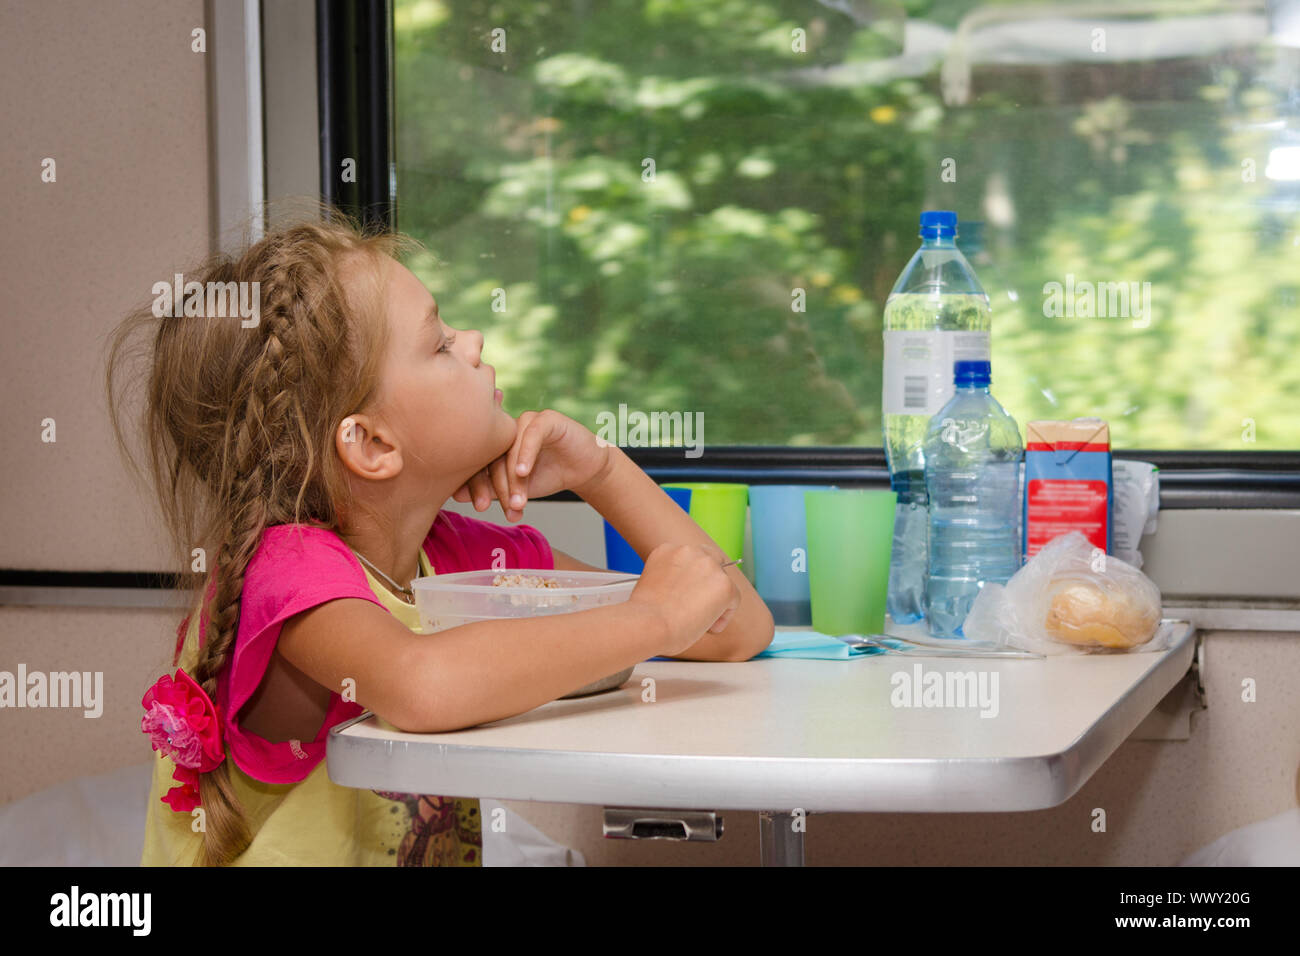 Une fille de six ans dans un train assis à une table avec de la nourriture sur une place inférieure dans le compartiment de deuxième classe de la voiture et a l'air e Banque D'Images